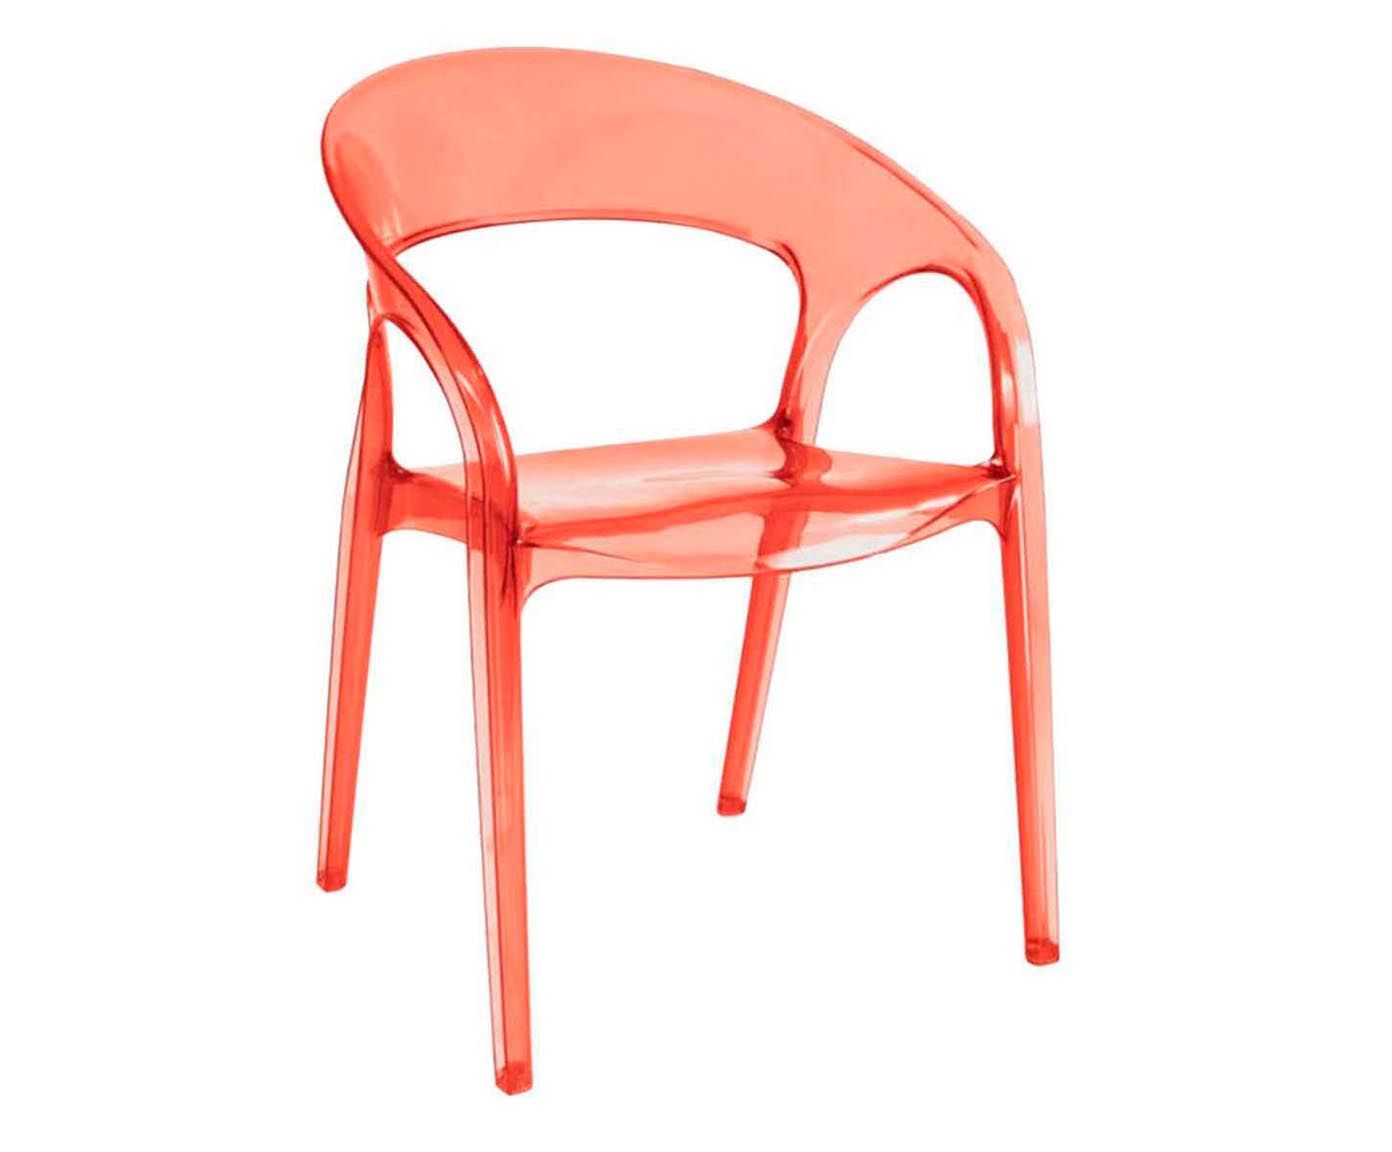 Cadeira formous - rama | Westwing.com.br